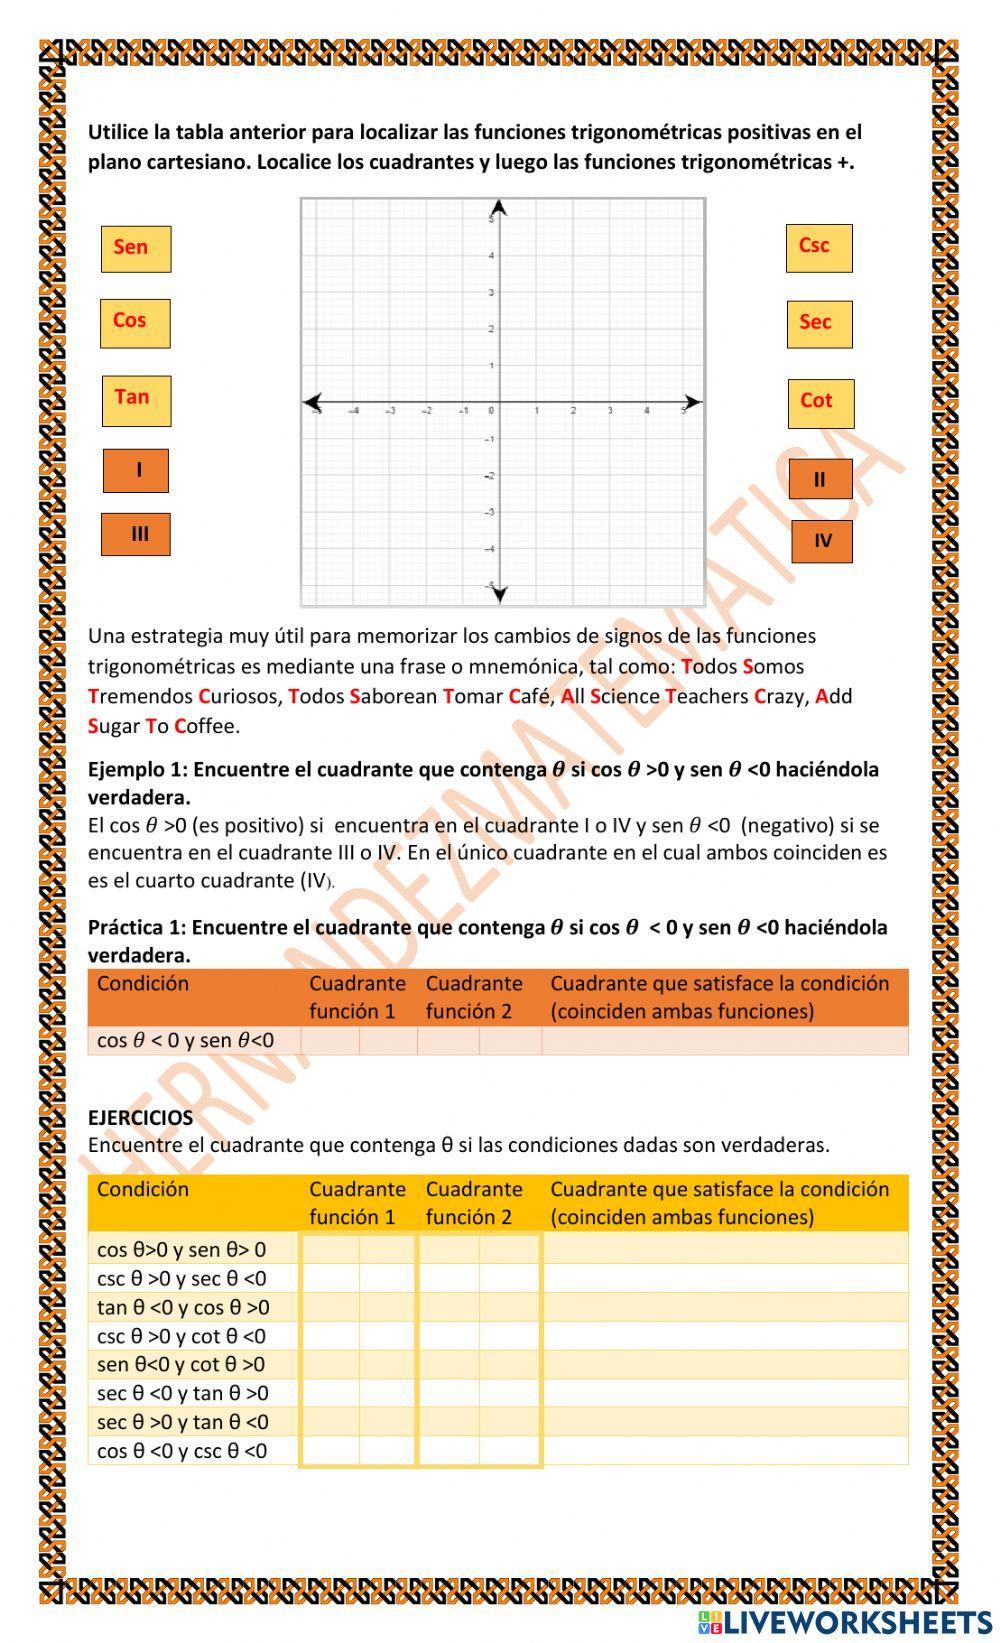 TRIG 2.D.1.d Extensión de trigonometría: Valores para ángulos especiales en posición estándar y en cuadrantes